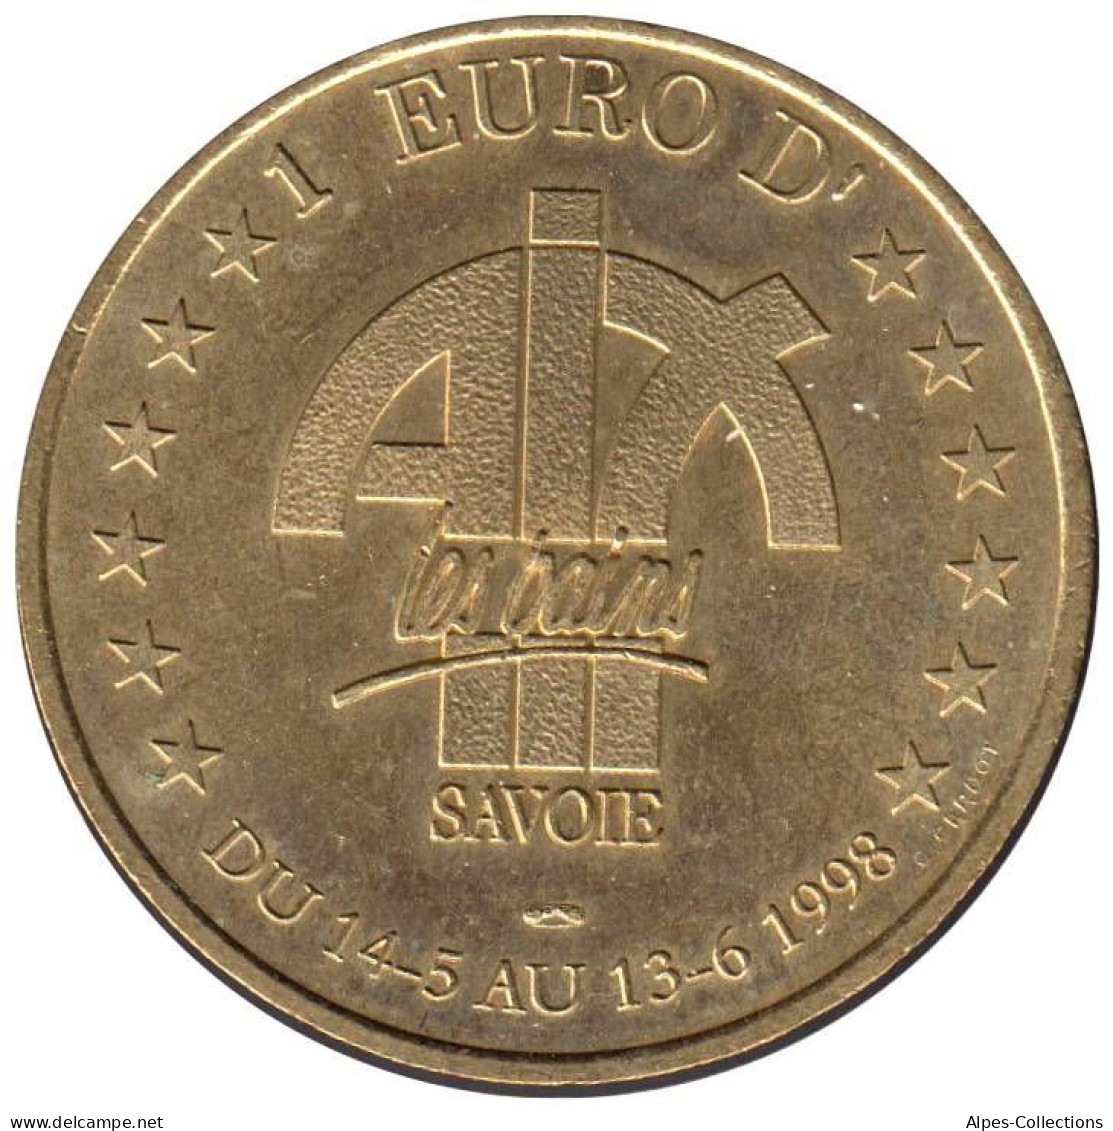 AIX LES BAINS - EU0010.3 - 1 EURO DES VILLES - Réf: T418 - 1998 - Euro Der Städte